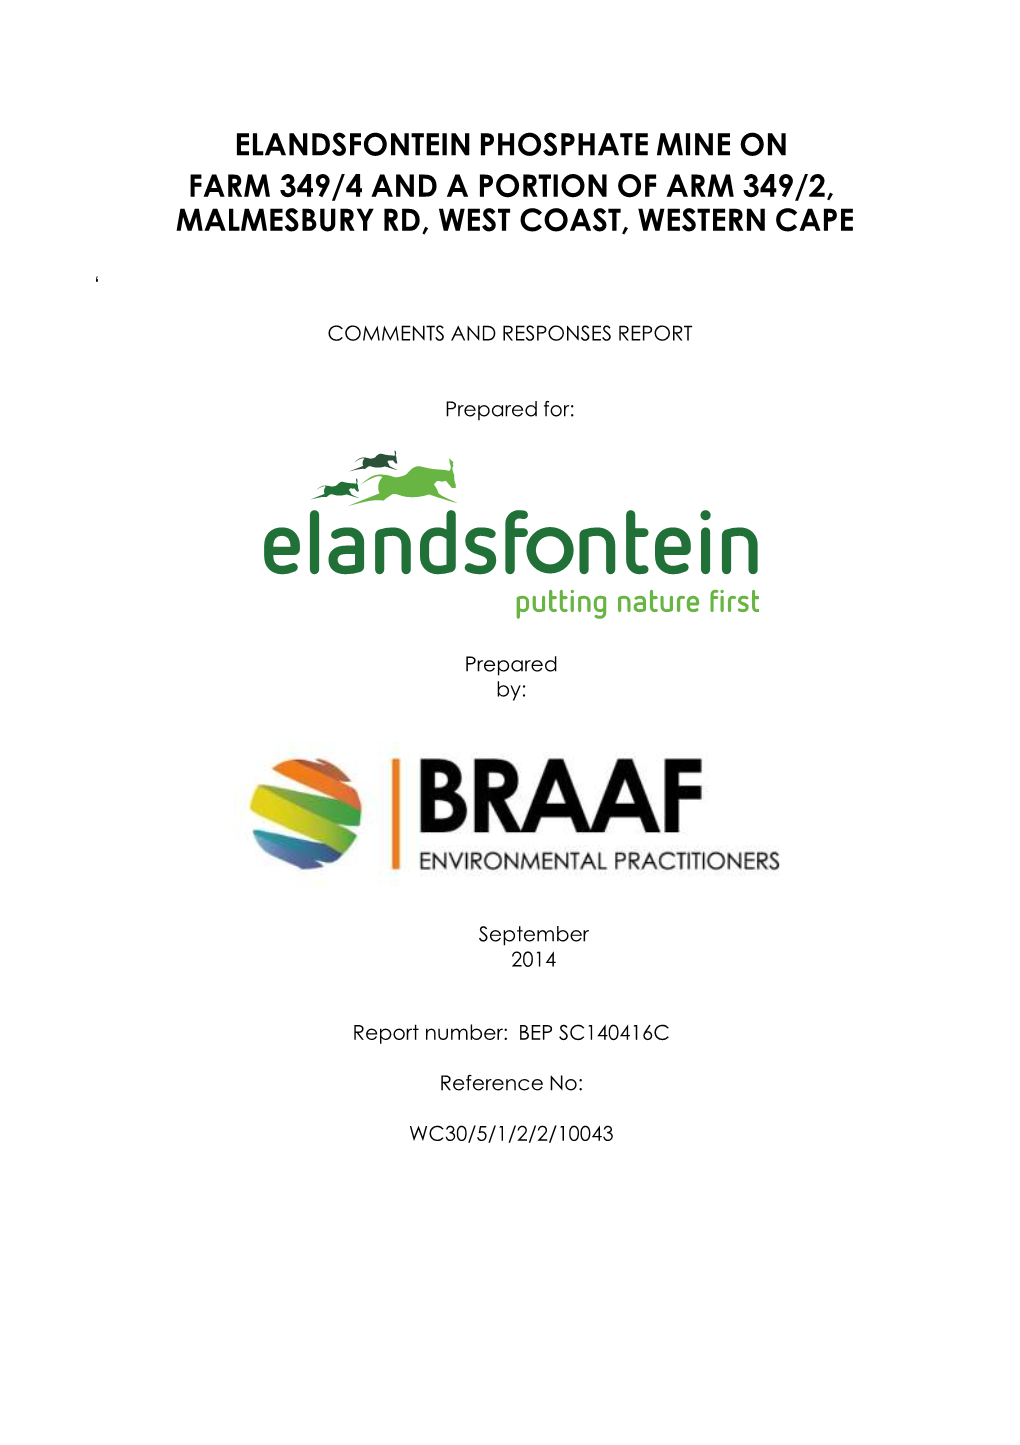 Elandsfontein Phosphate Mine on Farm 349/4 and a Portion of Arm 349/2, Malmesbury Rd, West Coast, Western Cape